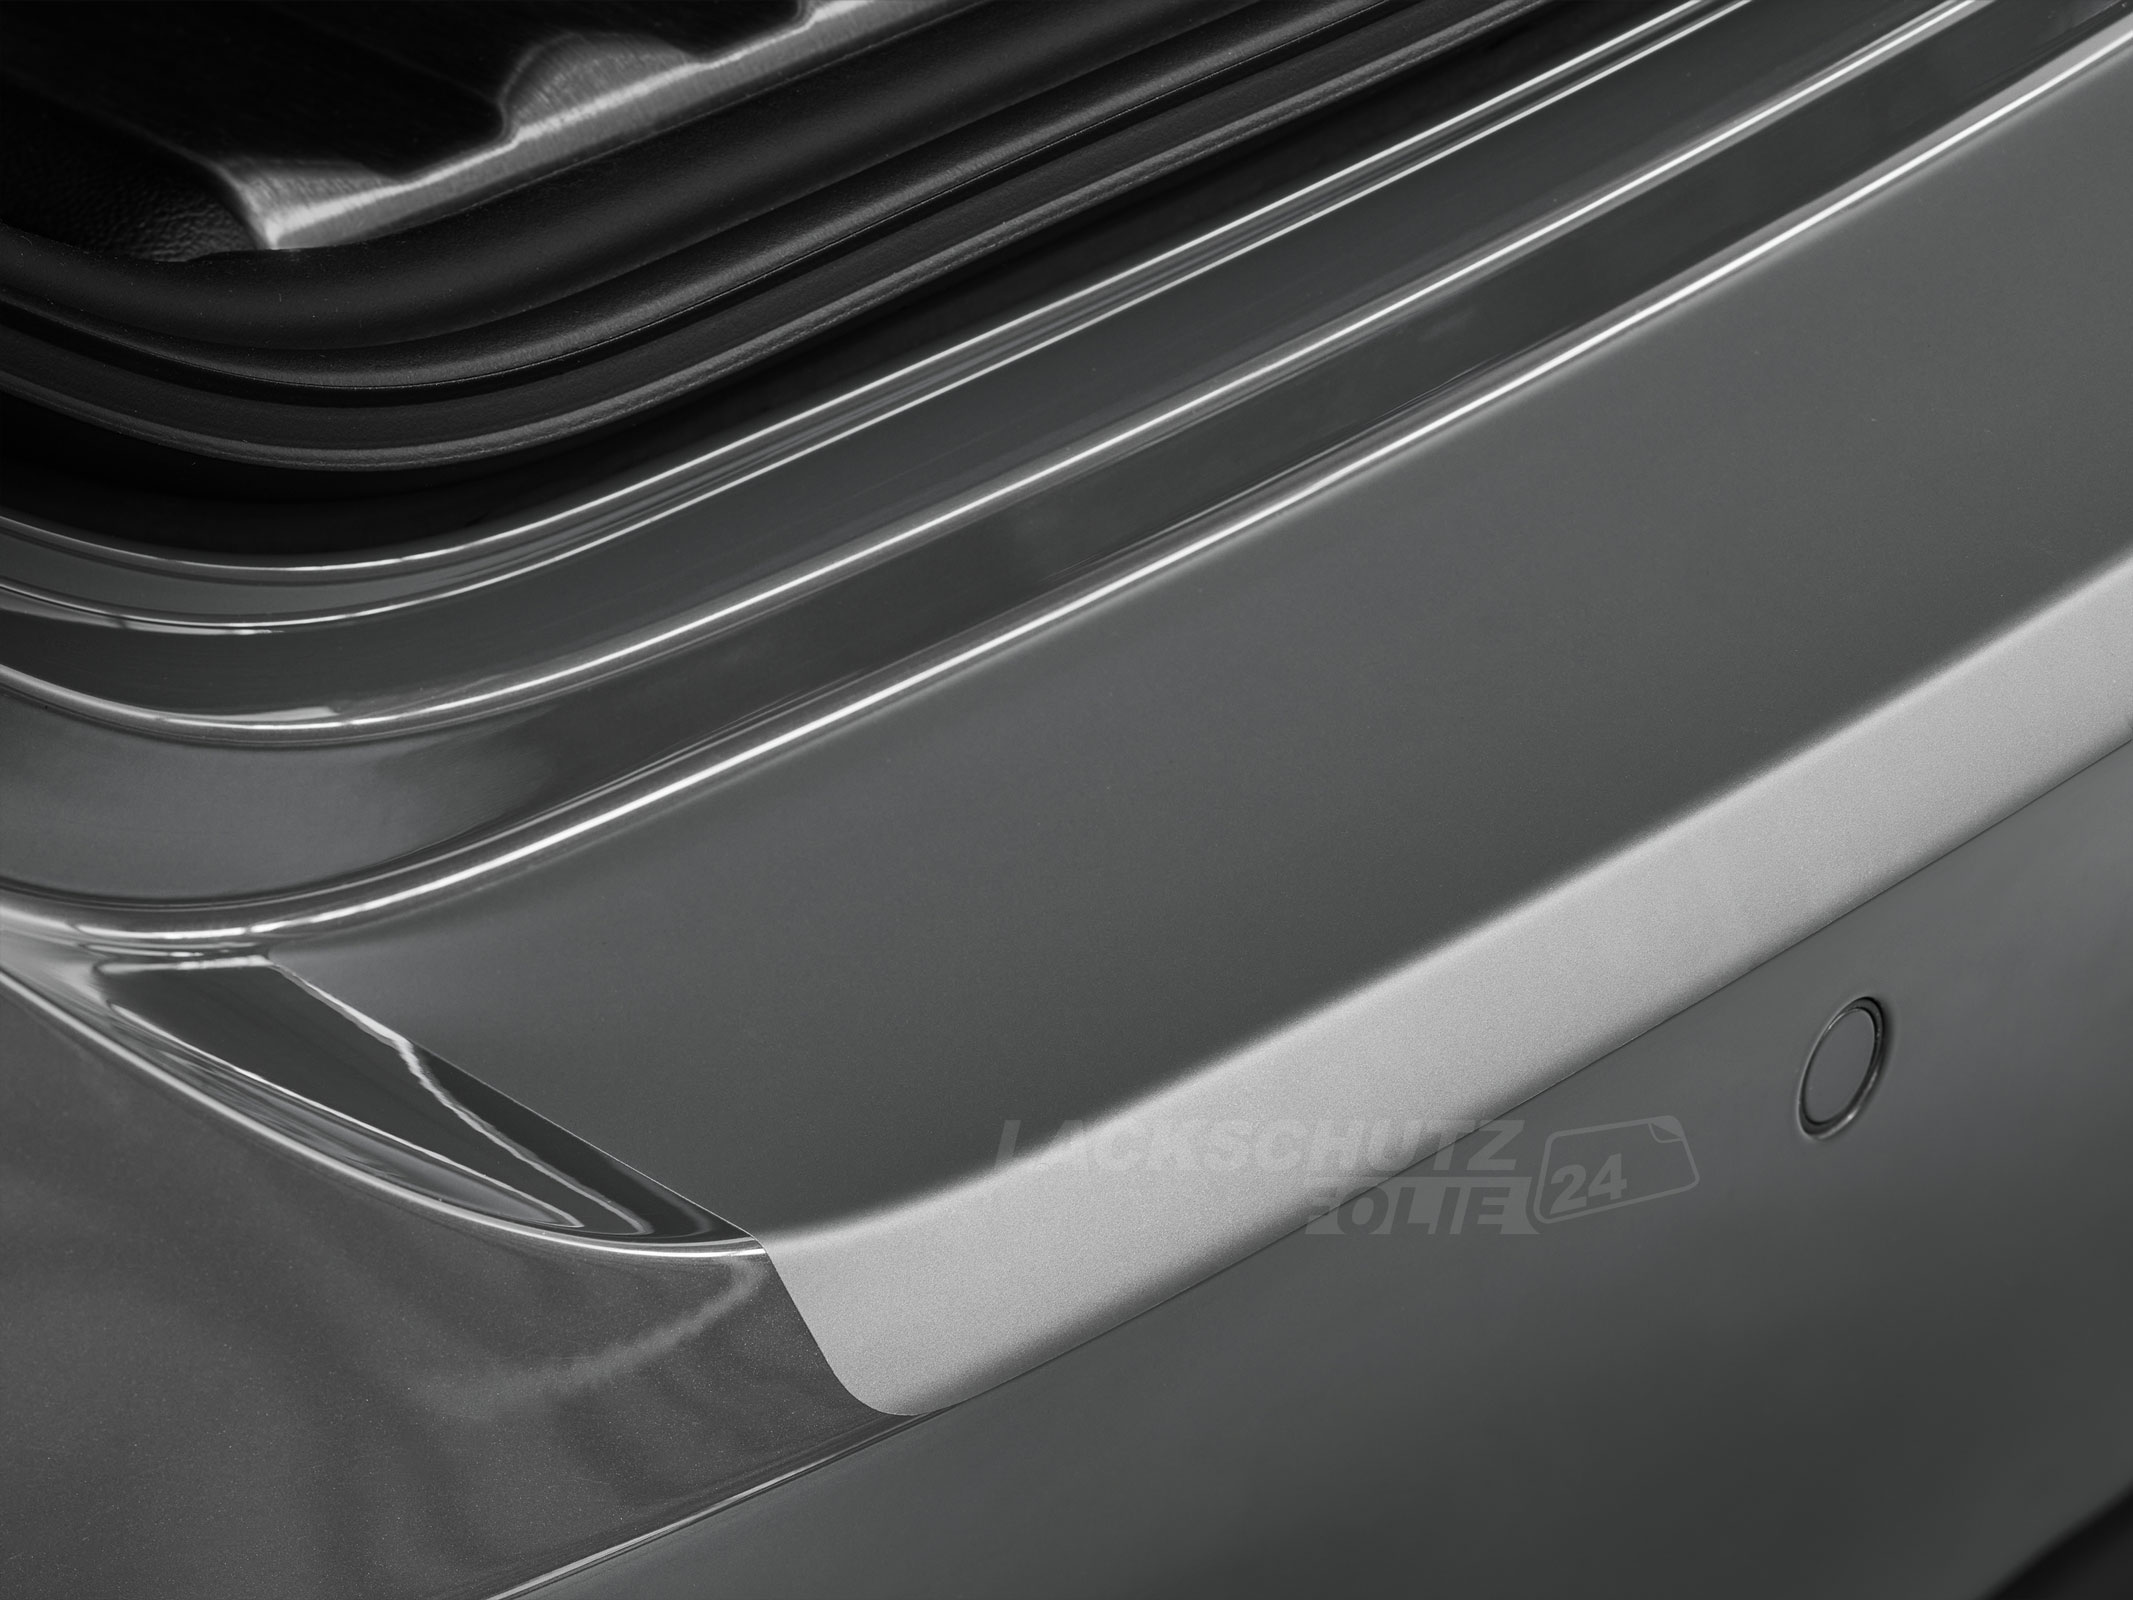 Ladekantenschutzfolie - Transparent Glatt MATT 110 µm stark  für Honda CR-V (IV) ab BJ 10/2012 + Faceliftmodell